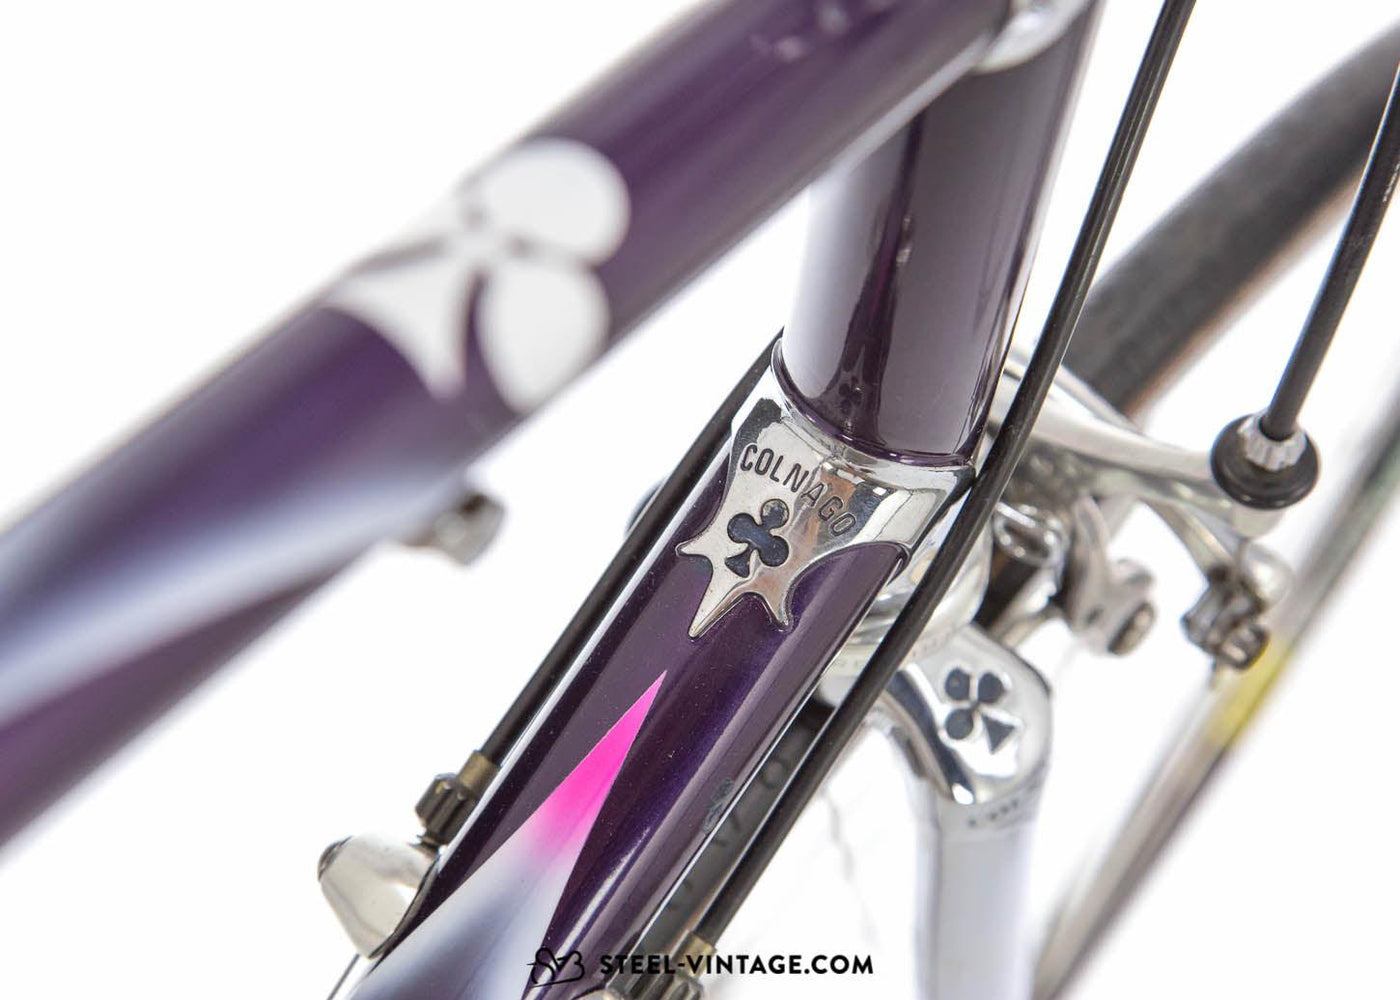 Colnago Elegant Classic Racing Bicycle - Steel Vintage Bikes